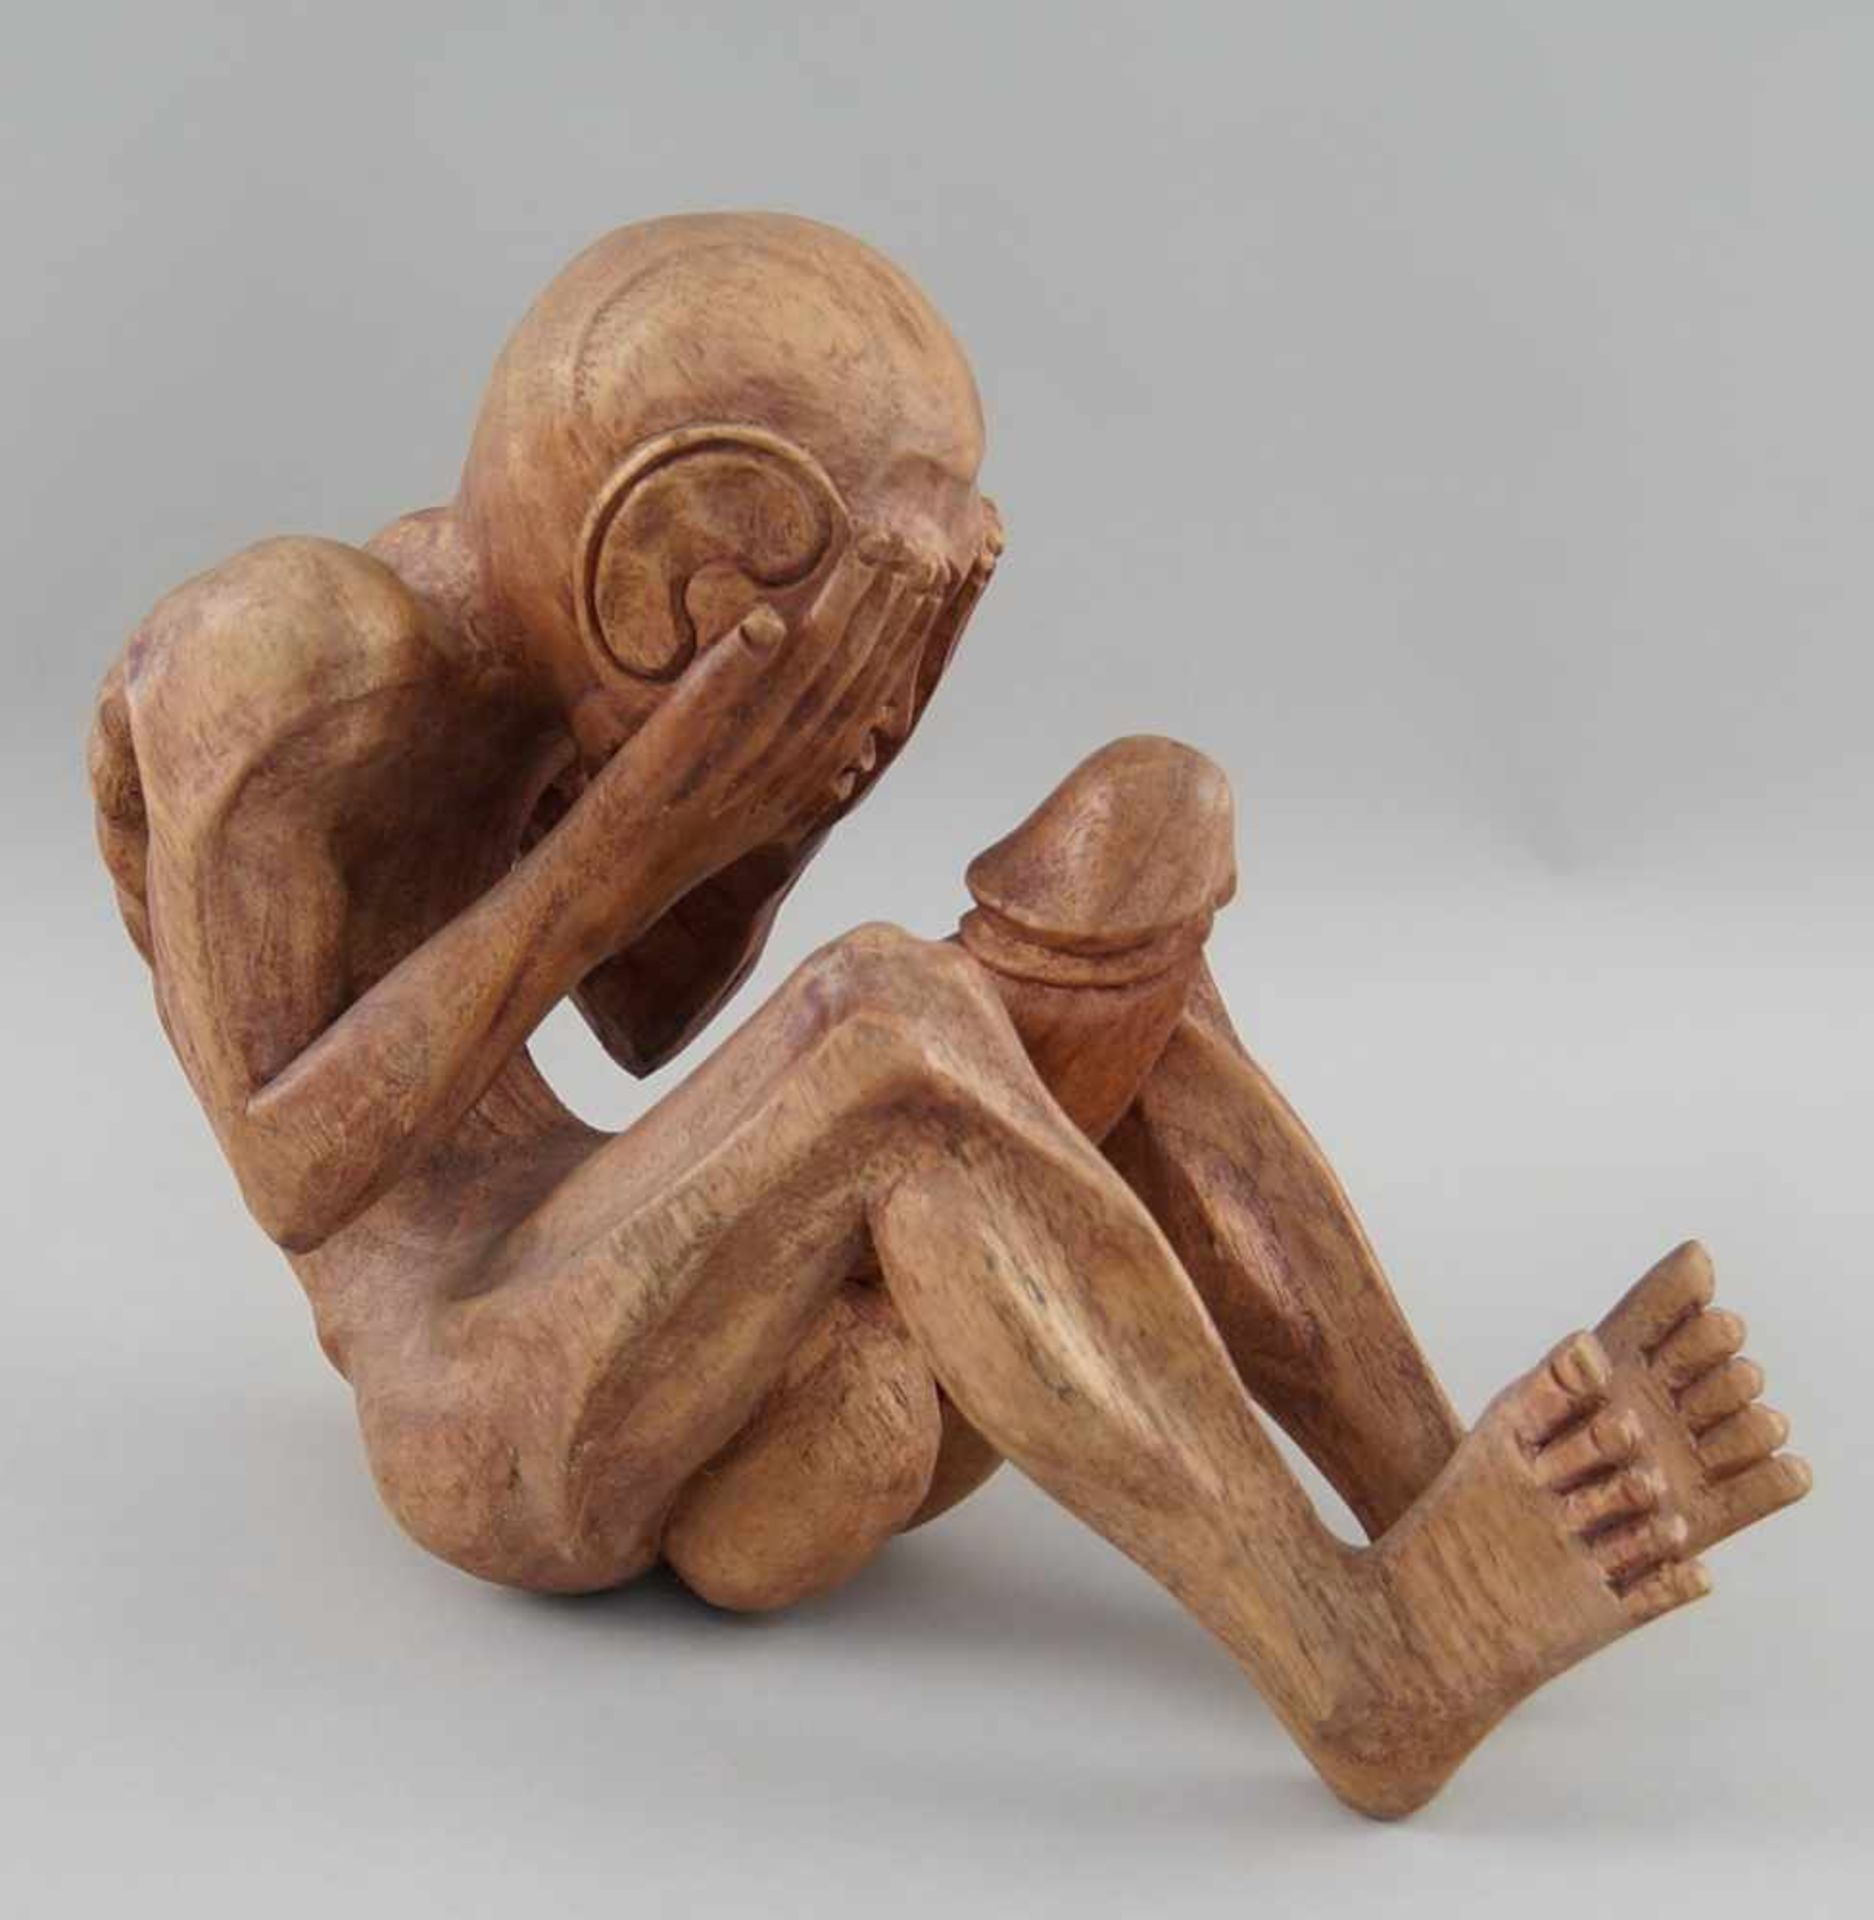 Fruchtbarkeitsskulptur / Ritualskulptur, Holz geschnitzt, H 23 cm - Bild 4 aus 4